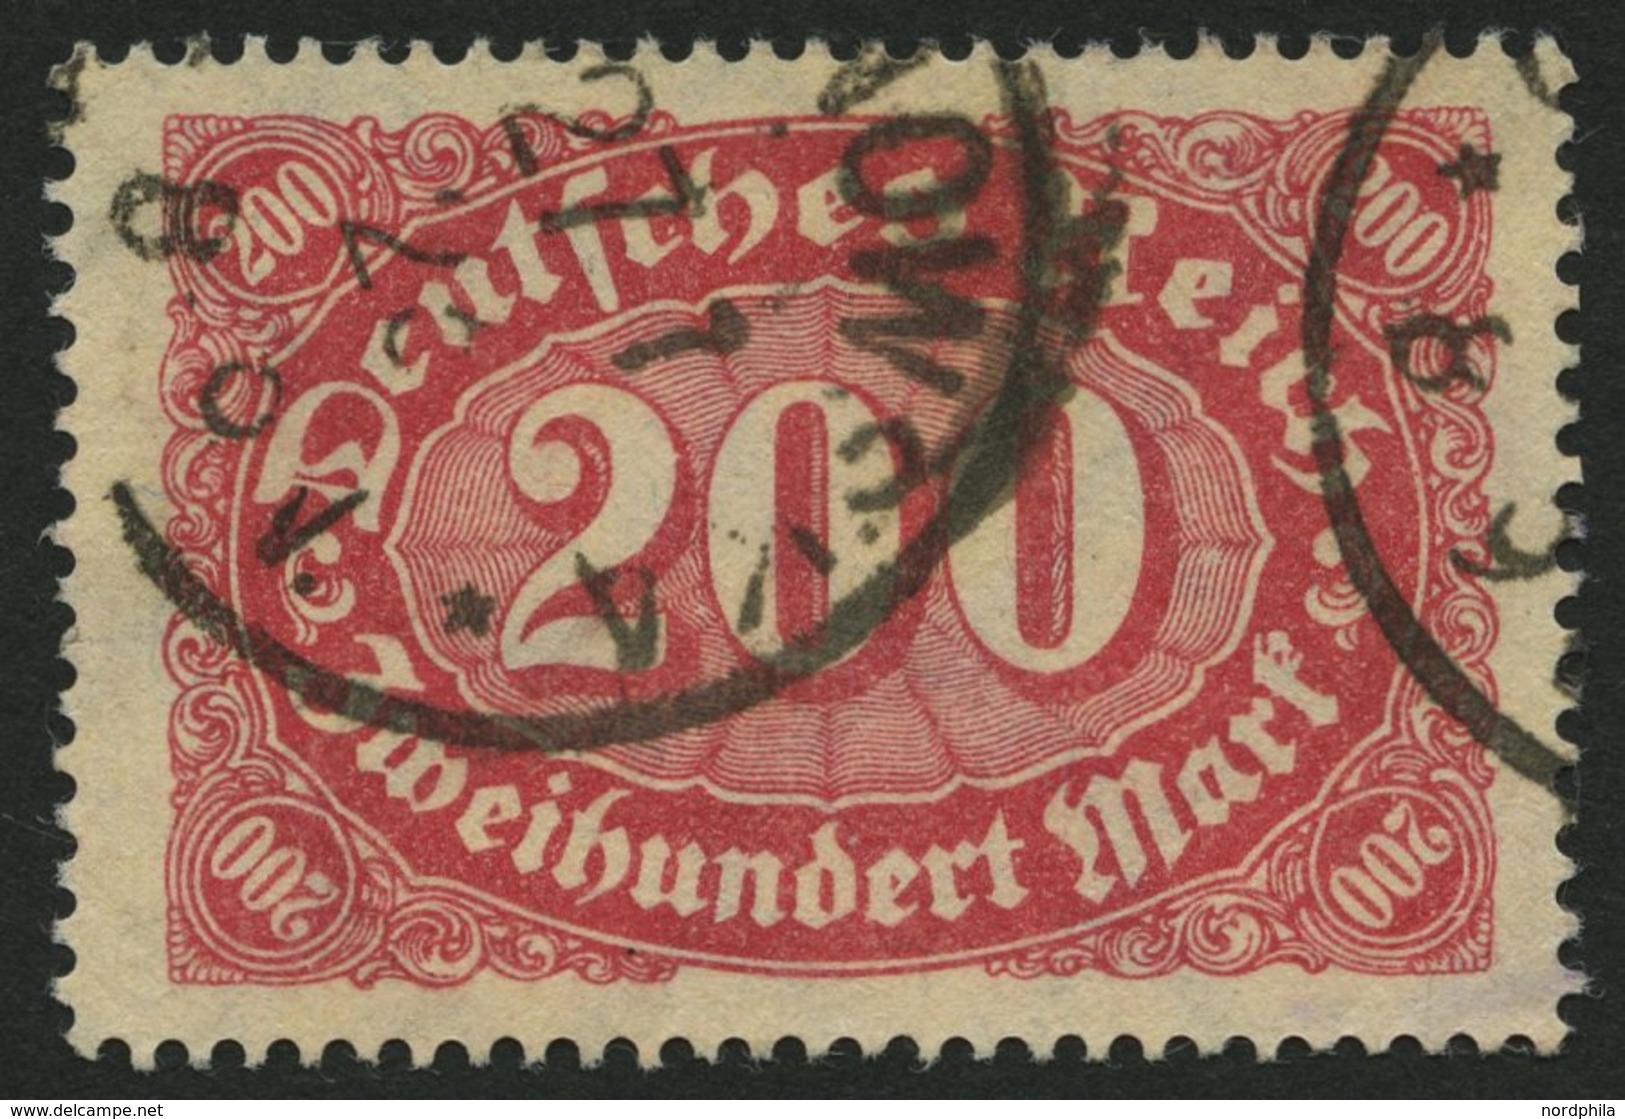 Dt. Reich 248b O, 1923, 200 M. Rotlila, Eckbug Sonst Pracht, Gepr. Infla, Mi. 100.- - Gebruikt